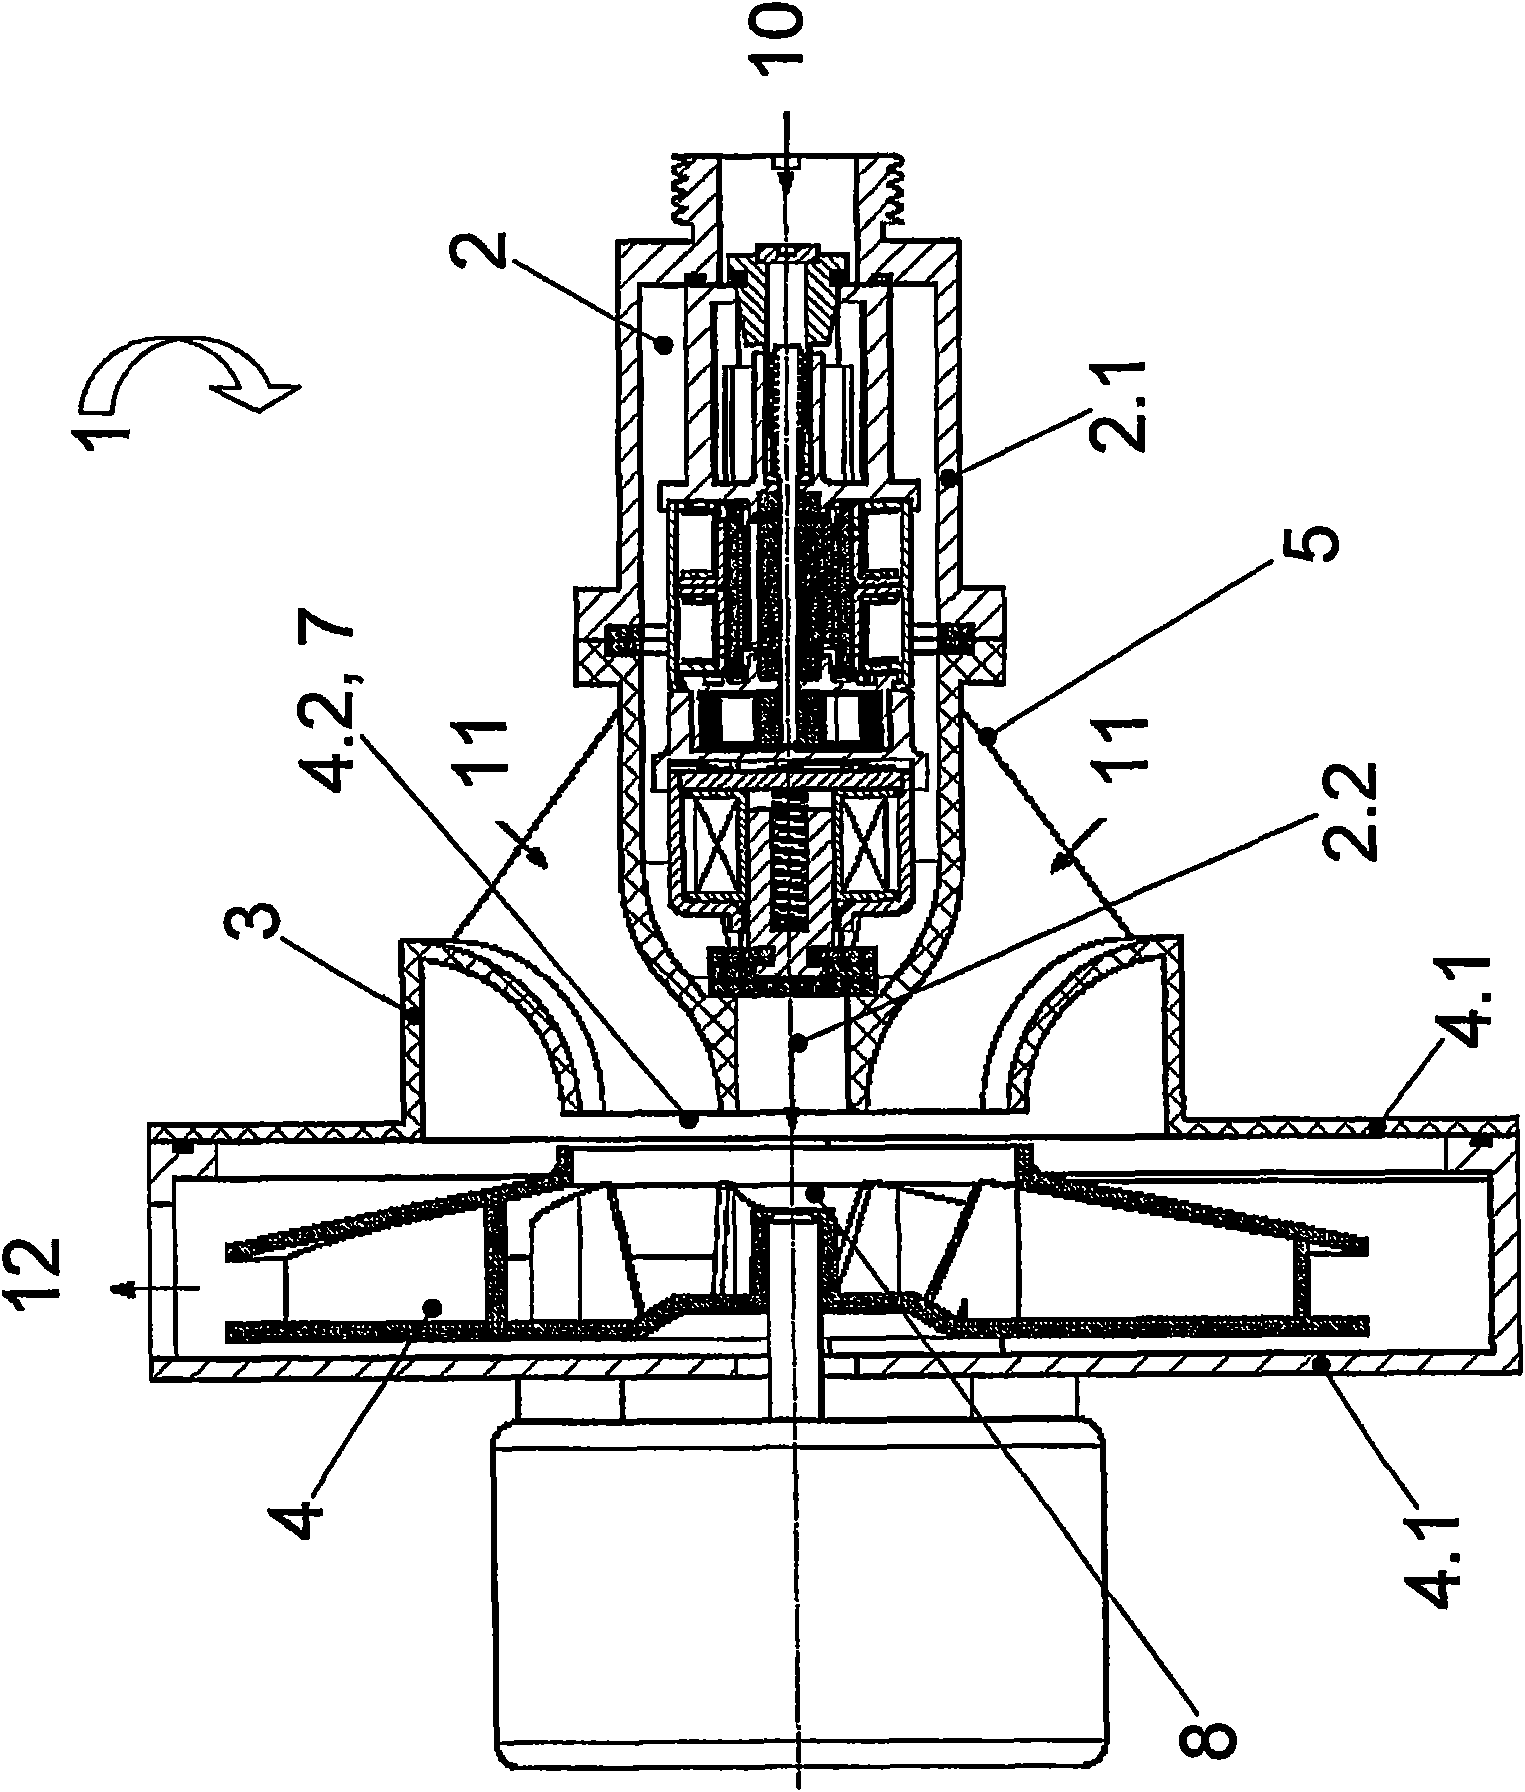 Combined ventilator/gas valve unit